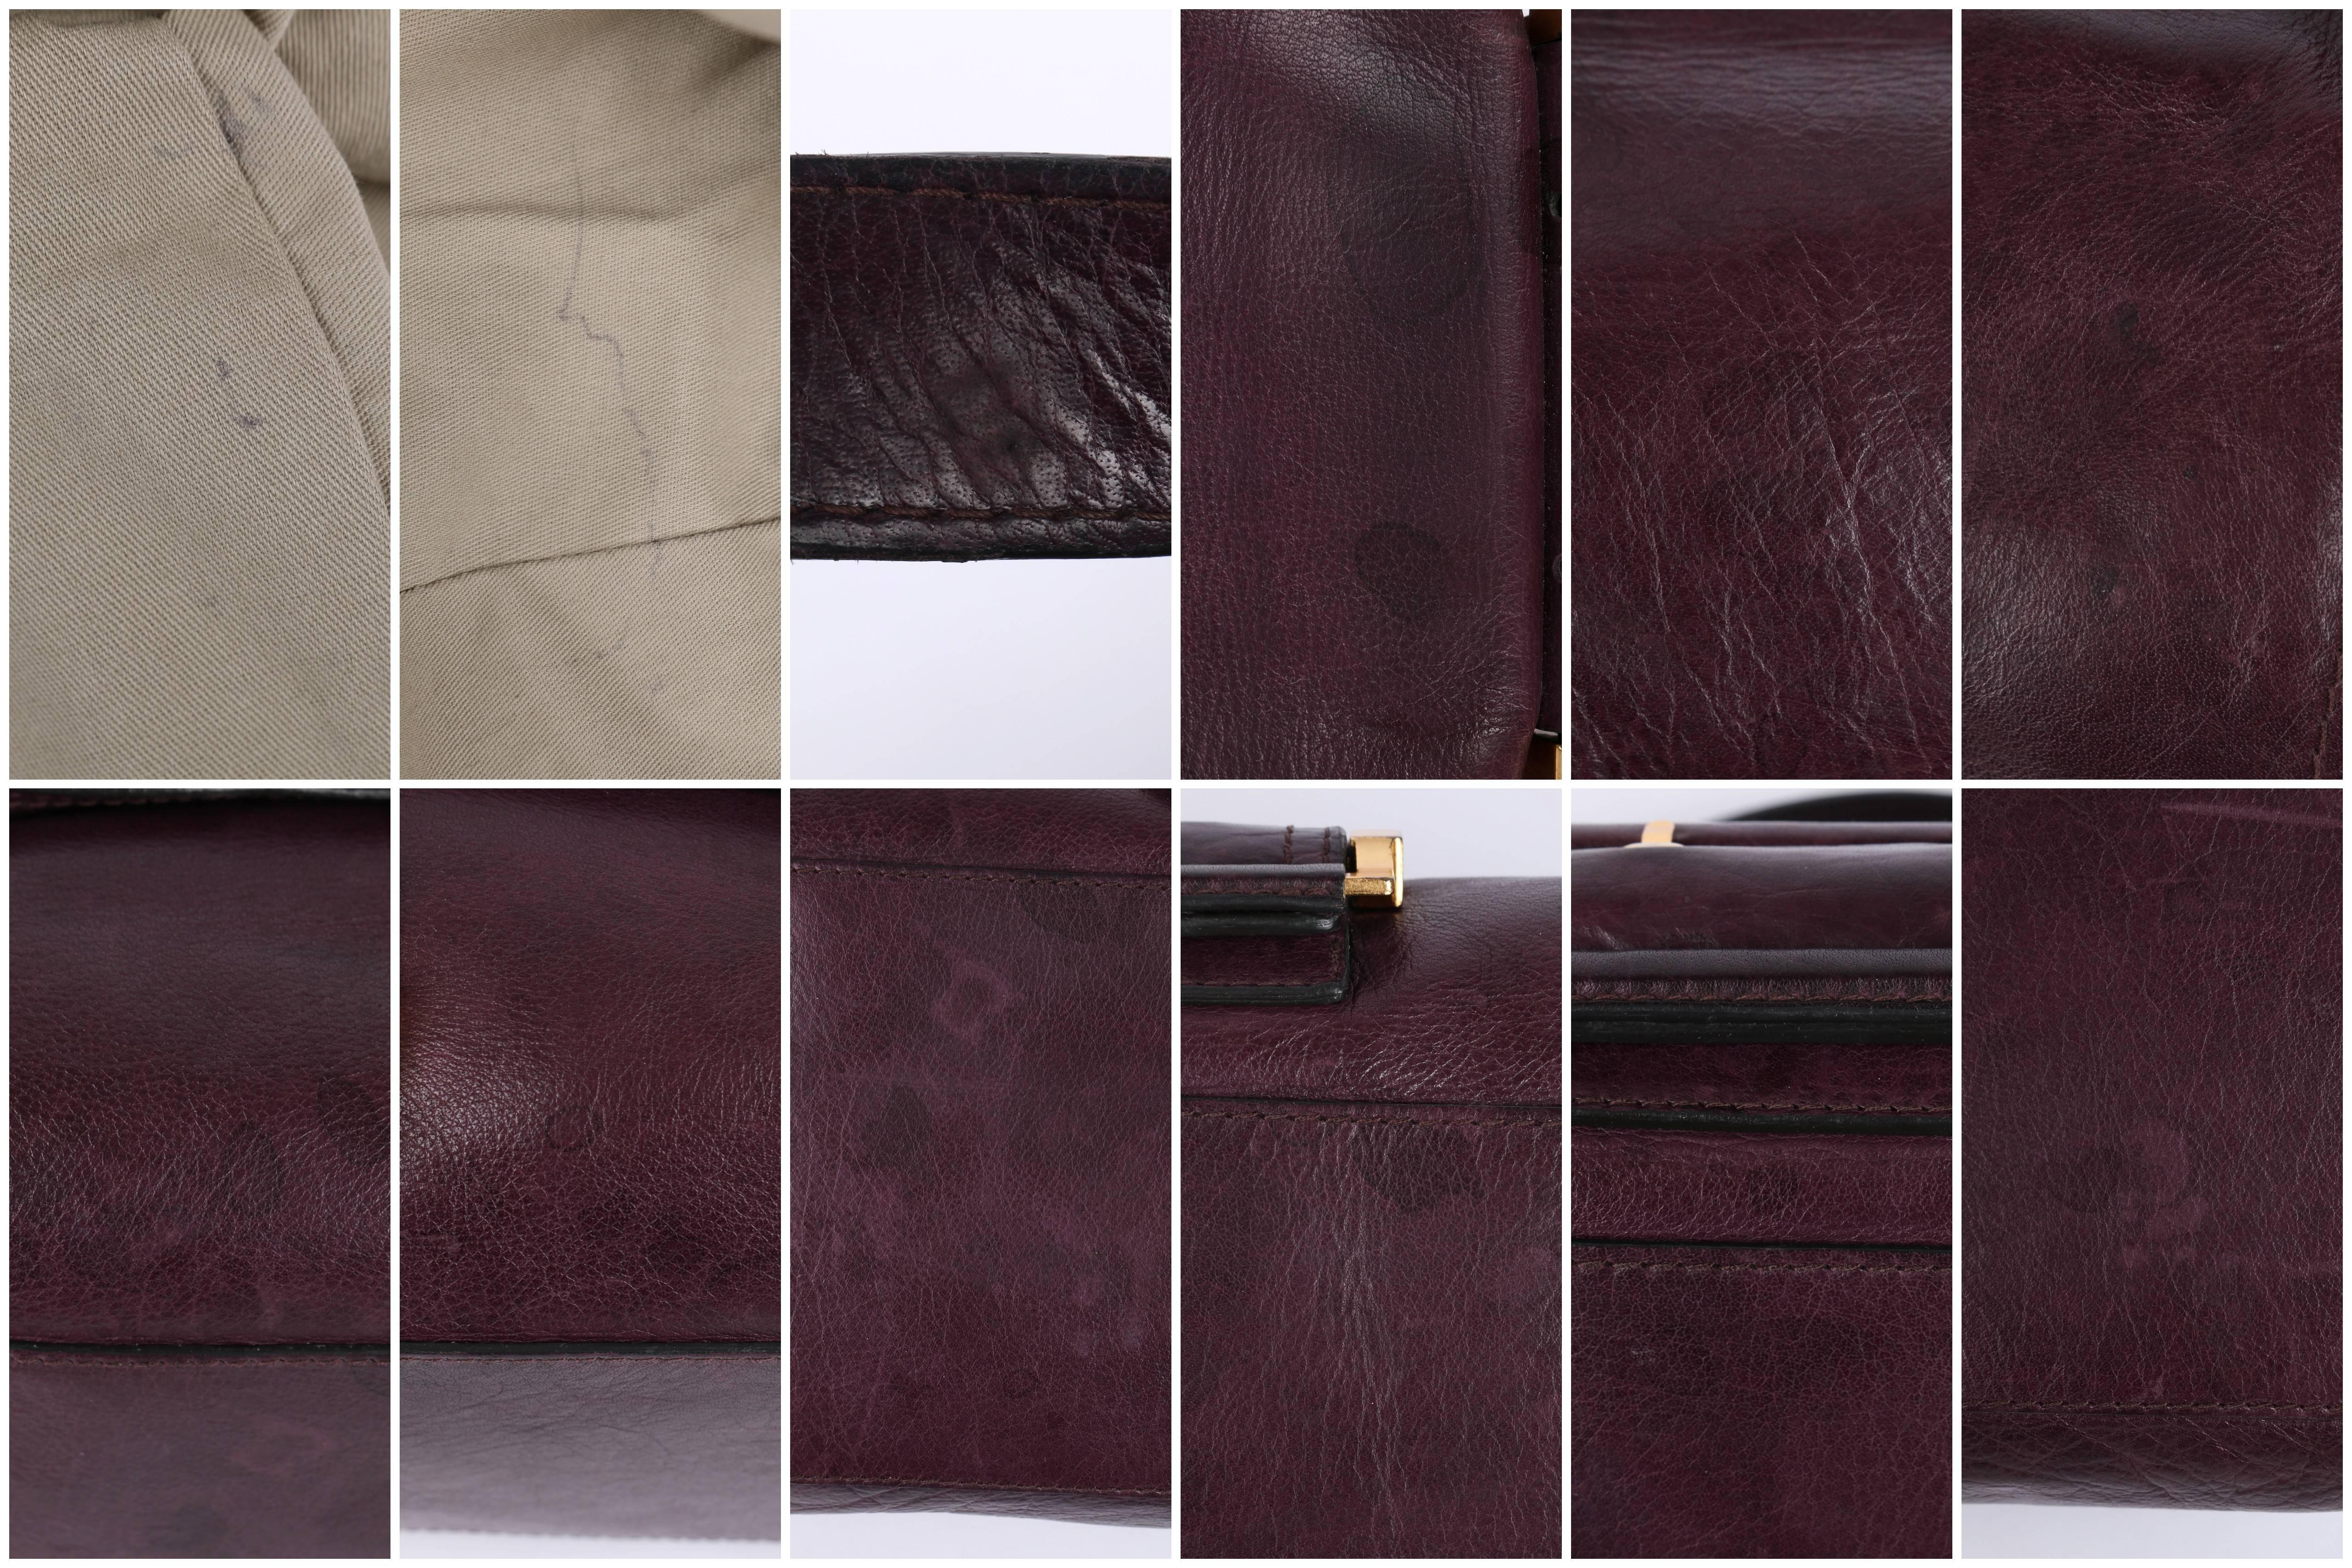 GIVENCHY c.2007 Plum Leather East-West Buckle Front Satchel Handbag Purse 2